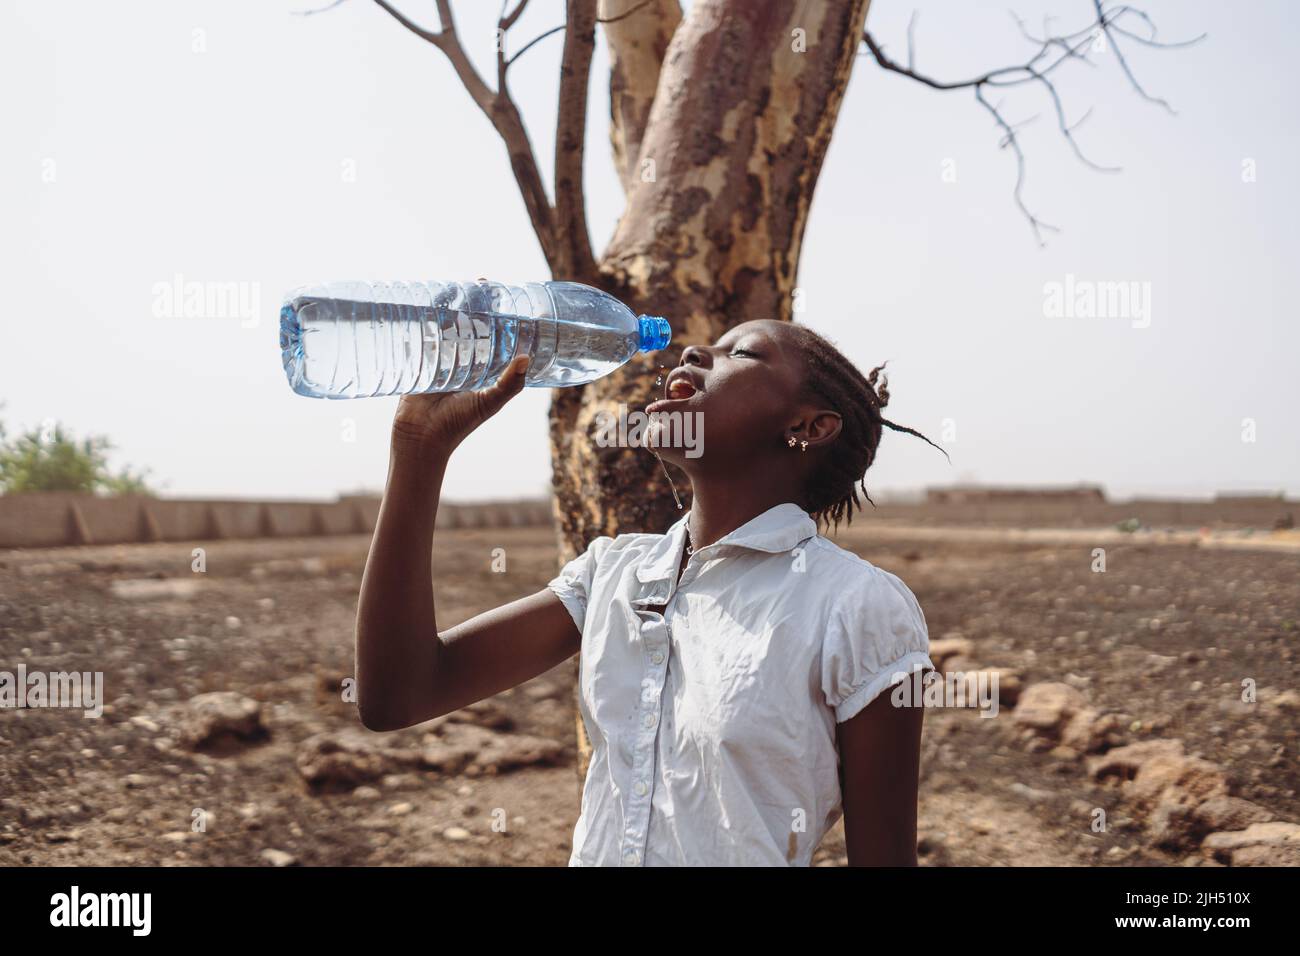 Jeune fille africaine dans un champ parché devant un arbre avarié de l'eau potable d'une bouteille; concept de manque d'eau potable dans la région équatoriale Banque D'Images